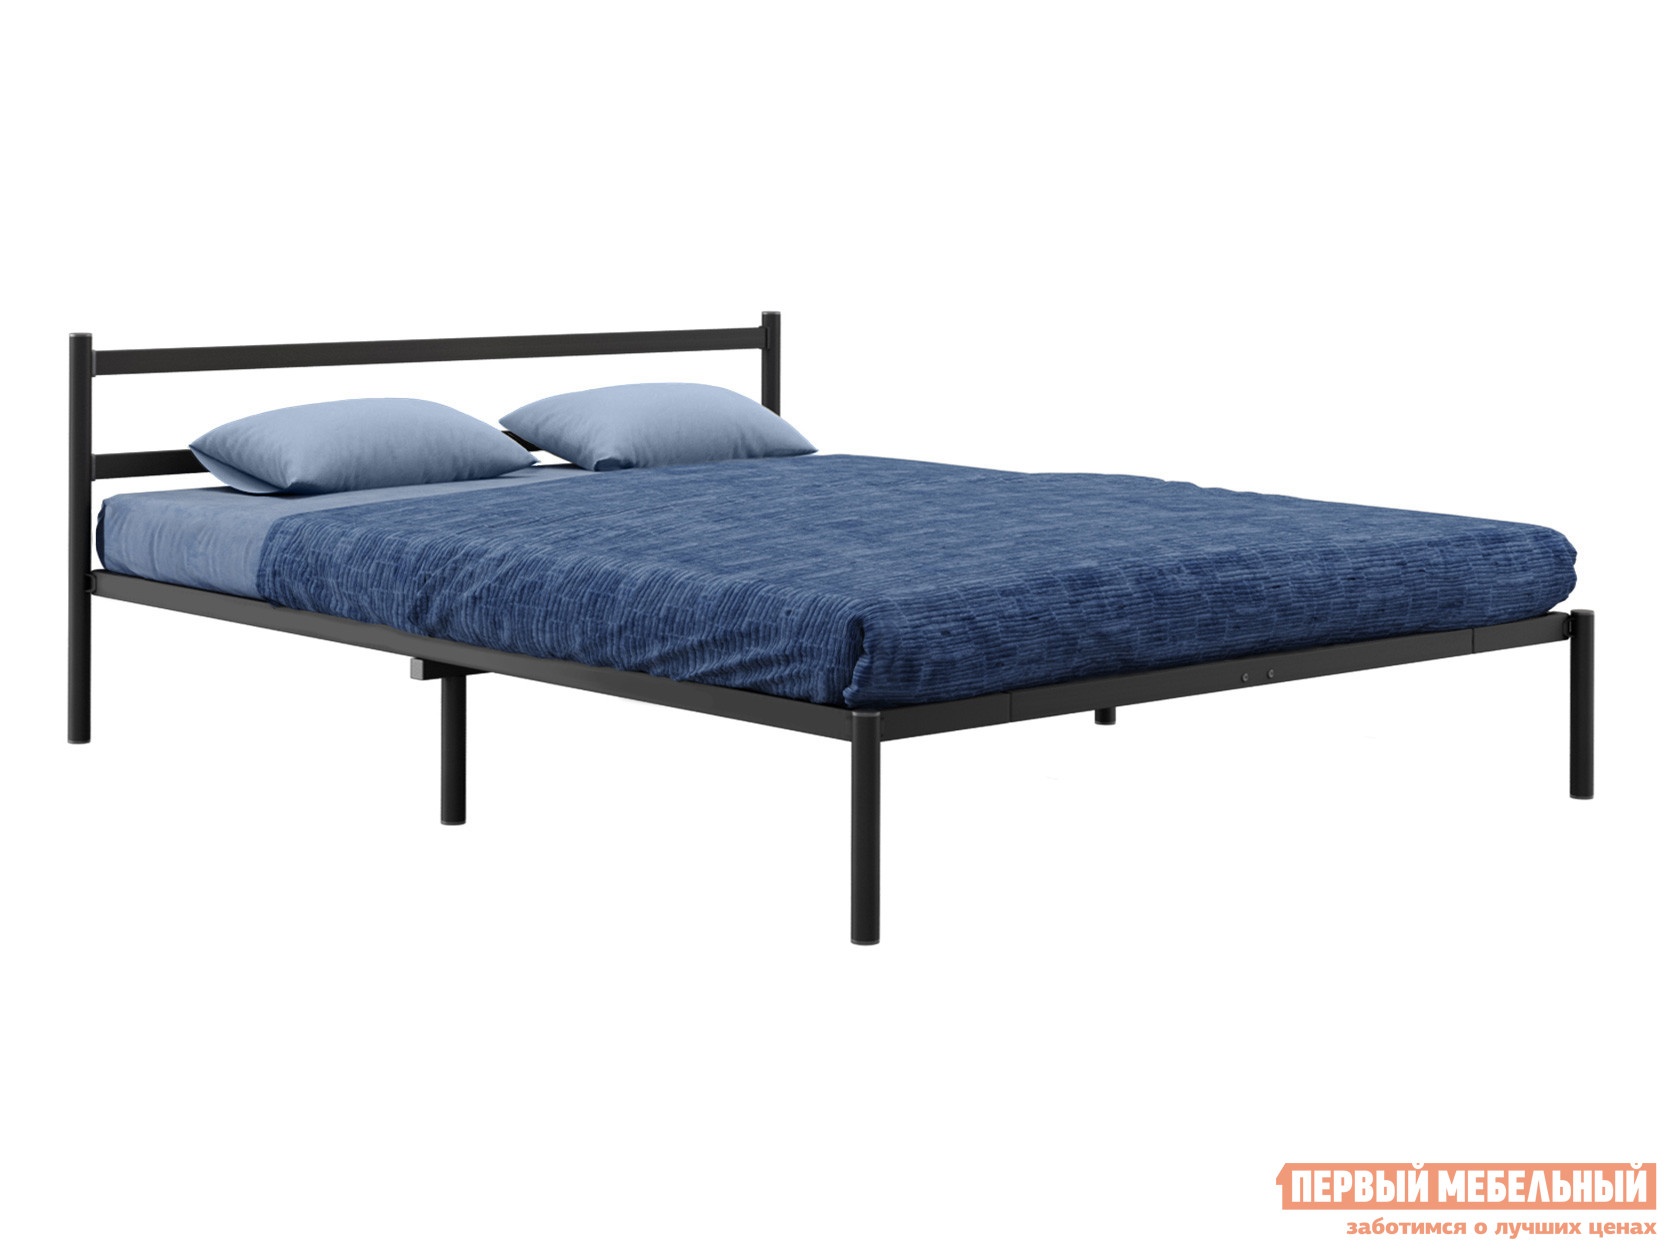 Двуспальная кровать грета черный, металл, 160х200 см, без матрасодержателя